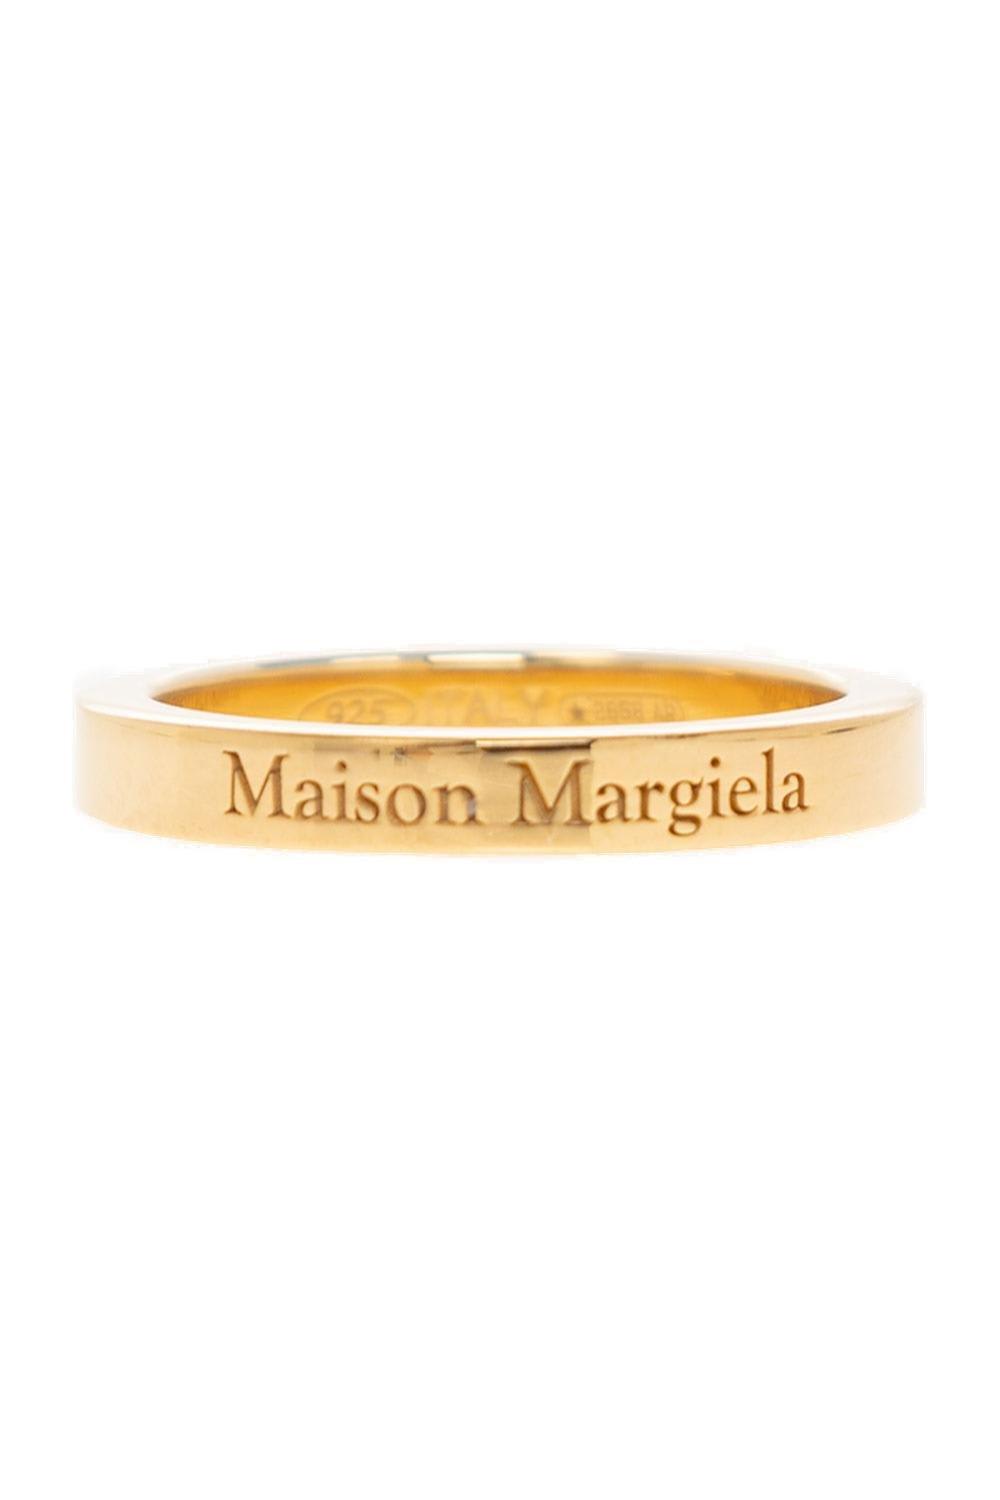 MAISON MARGIELA LOGO ENGRAVED RING